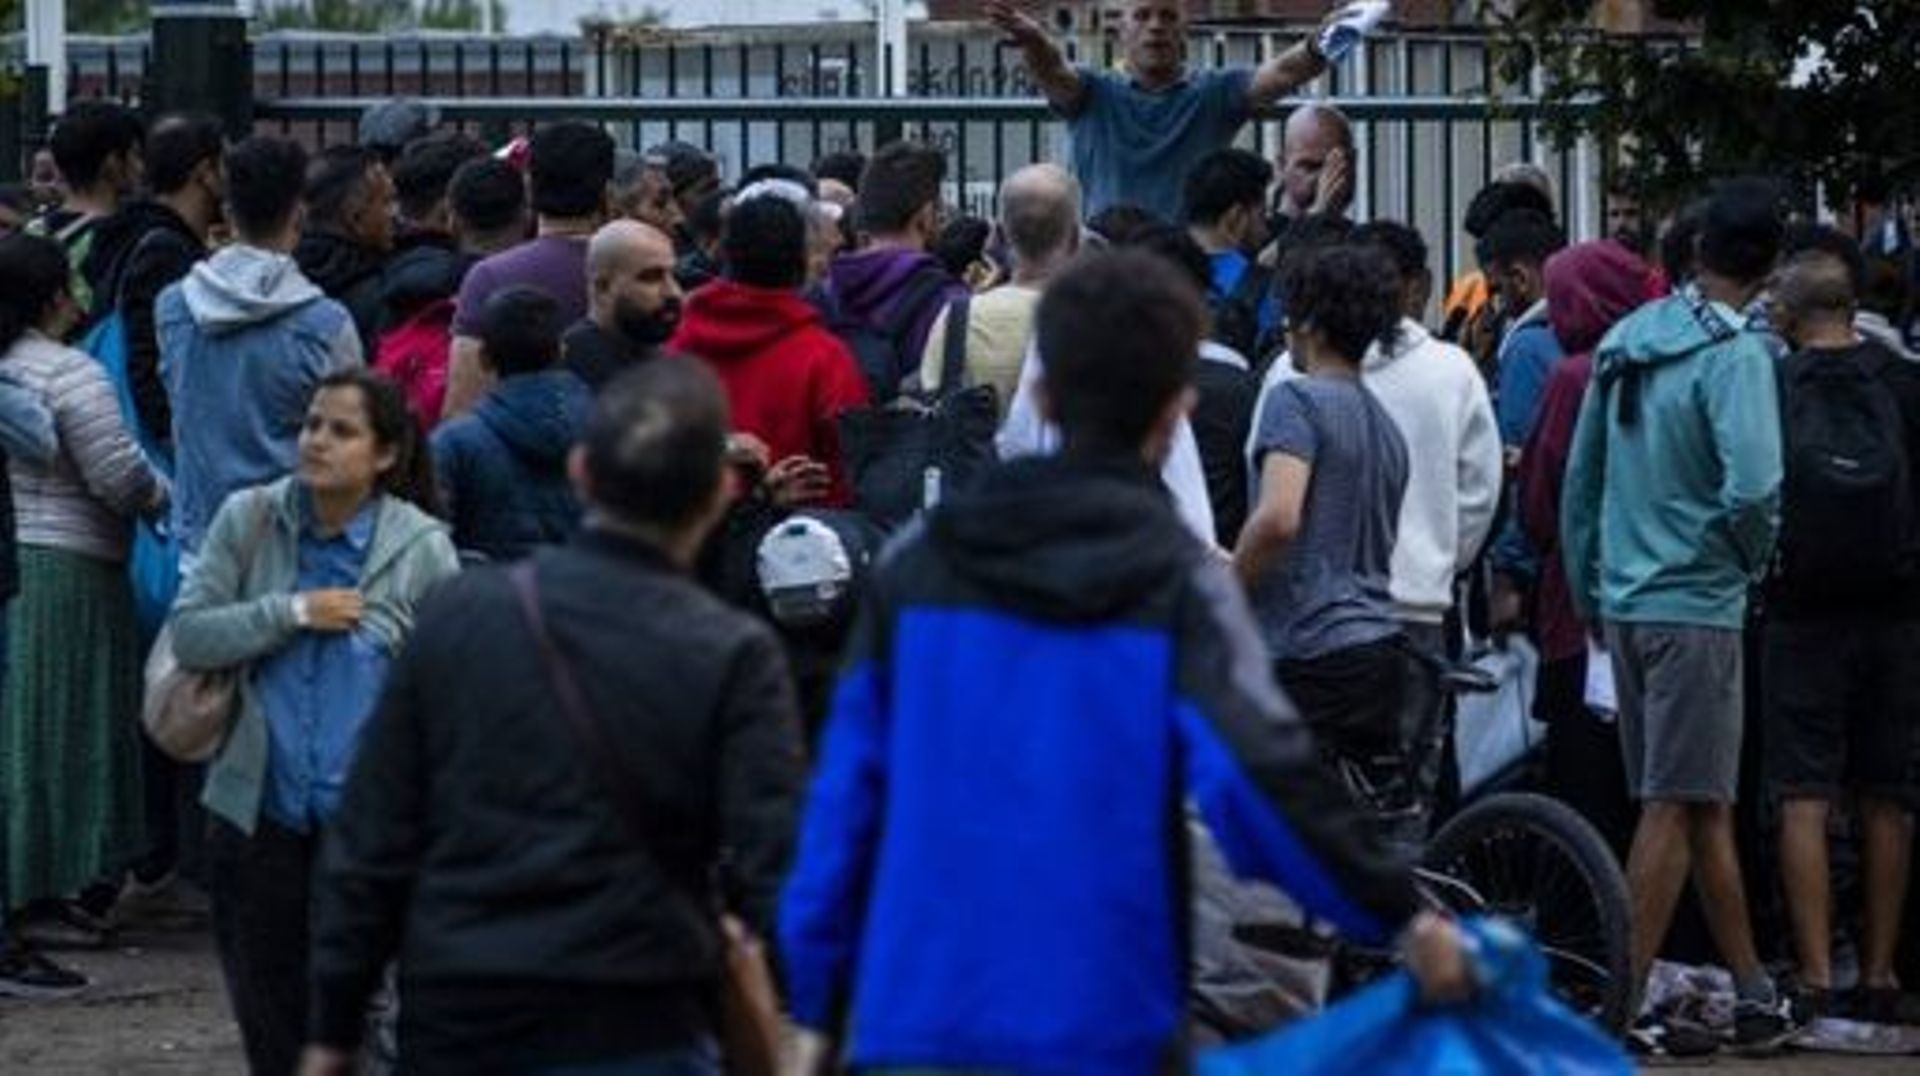 De longues files devant un centre d'enregistrement de demandeurs d'asile aux Pays-Bas